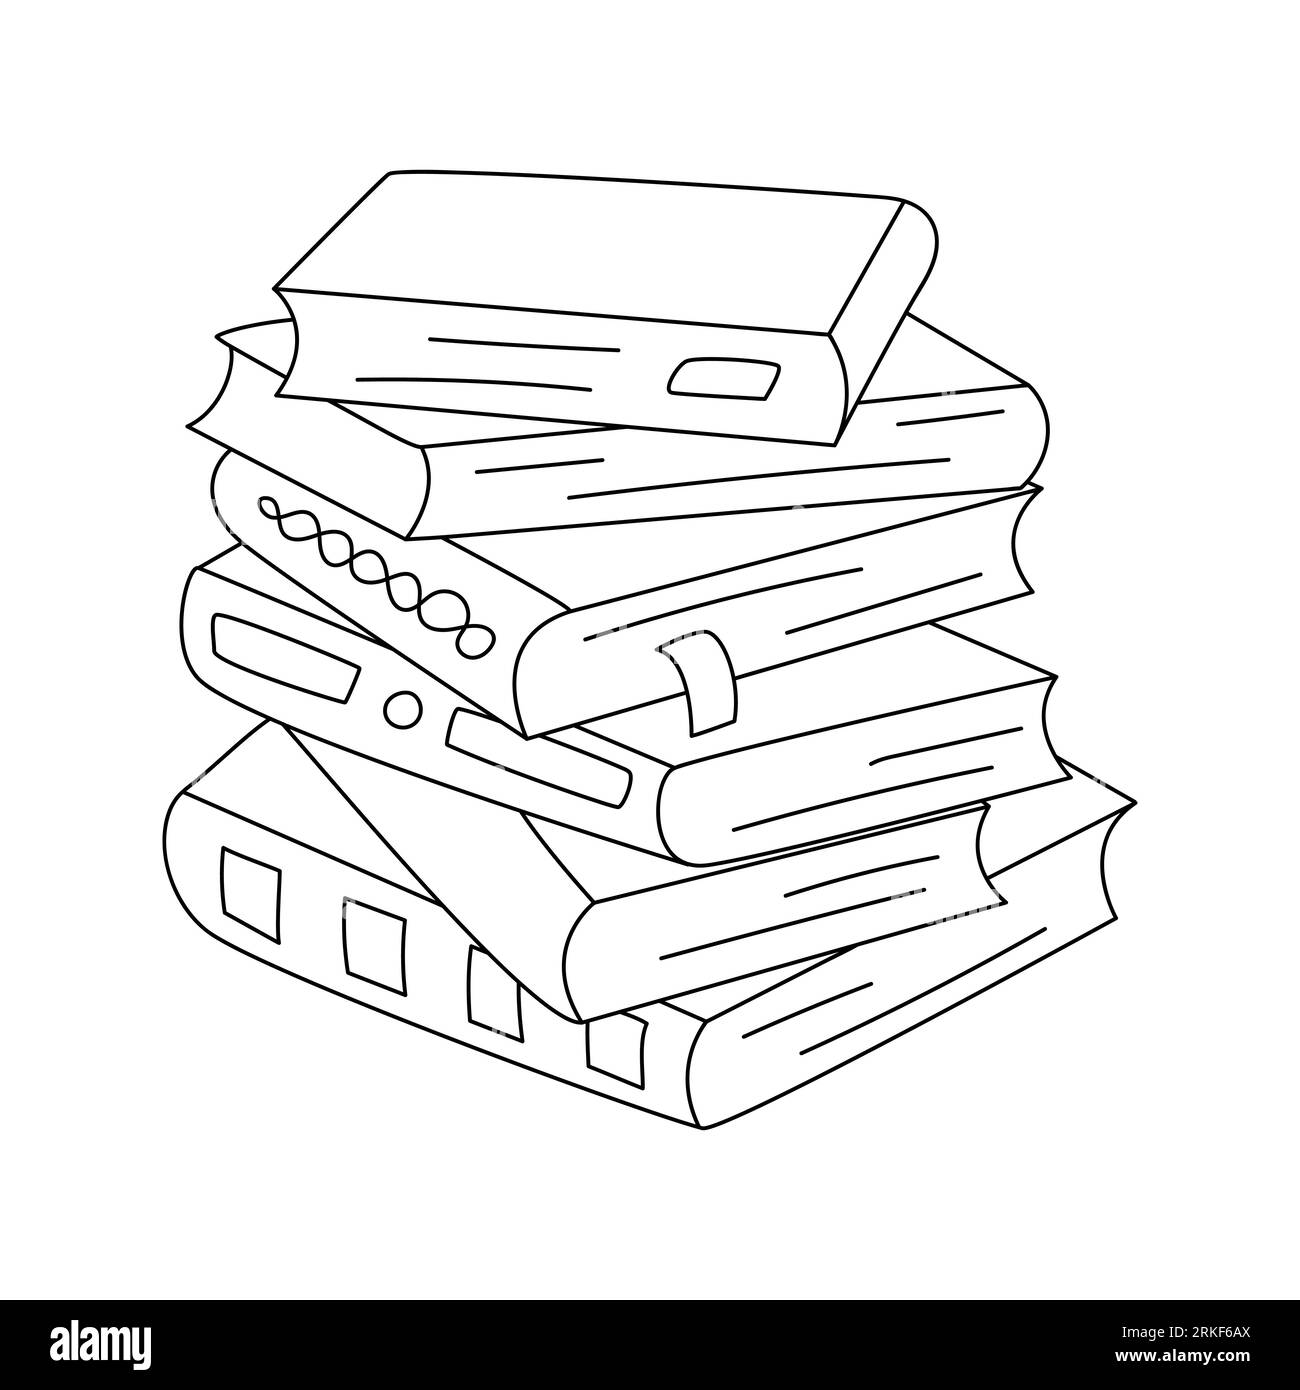 Stapel verschiedener Bücher mit Buchmarken. Hand gezeichneter Doodle-Stapel aus Büchern, Lehrbüchern. Ein Symbol für Lesen, Lernen, Bildung und Wissenschaft. Schwarz und weiß Stock Vektor